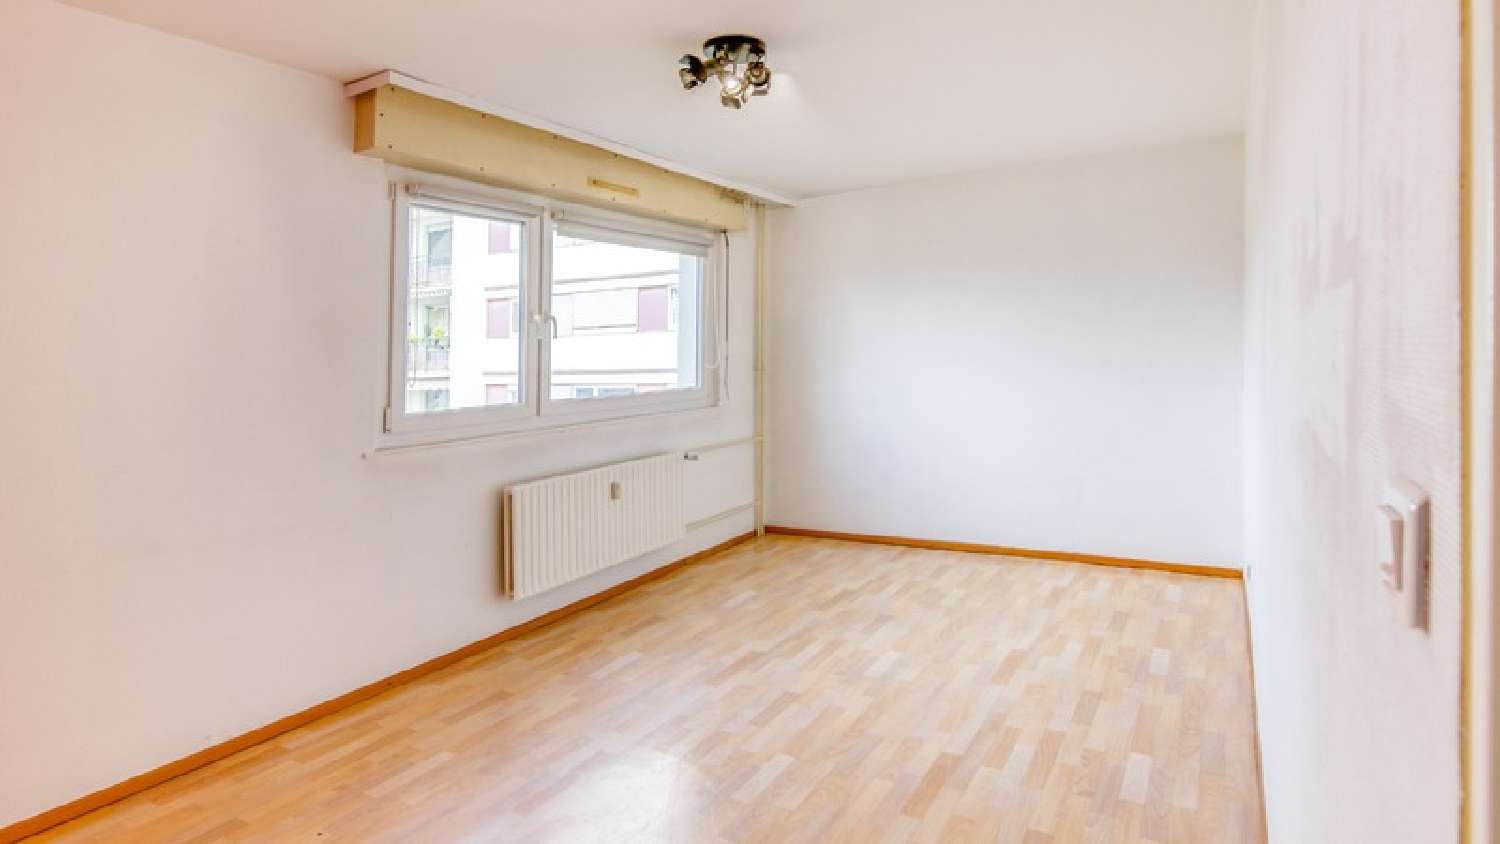  à vendre appartement Illzach Haut-Rhin 3